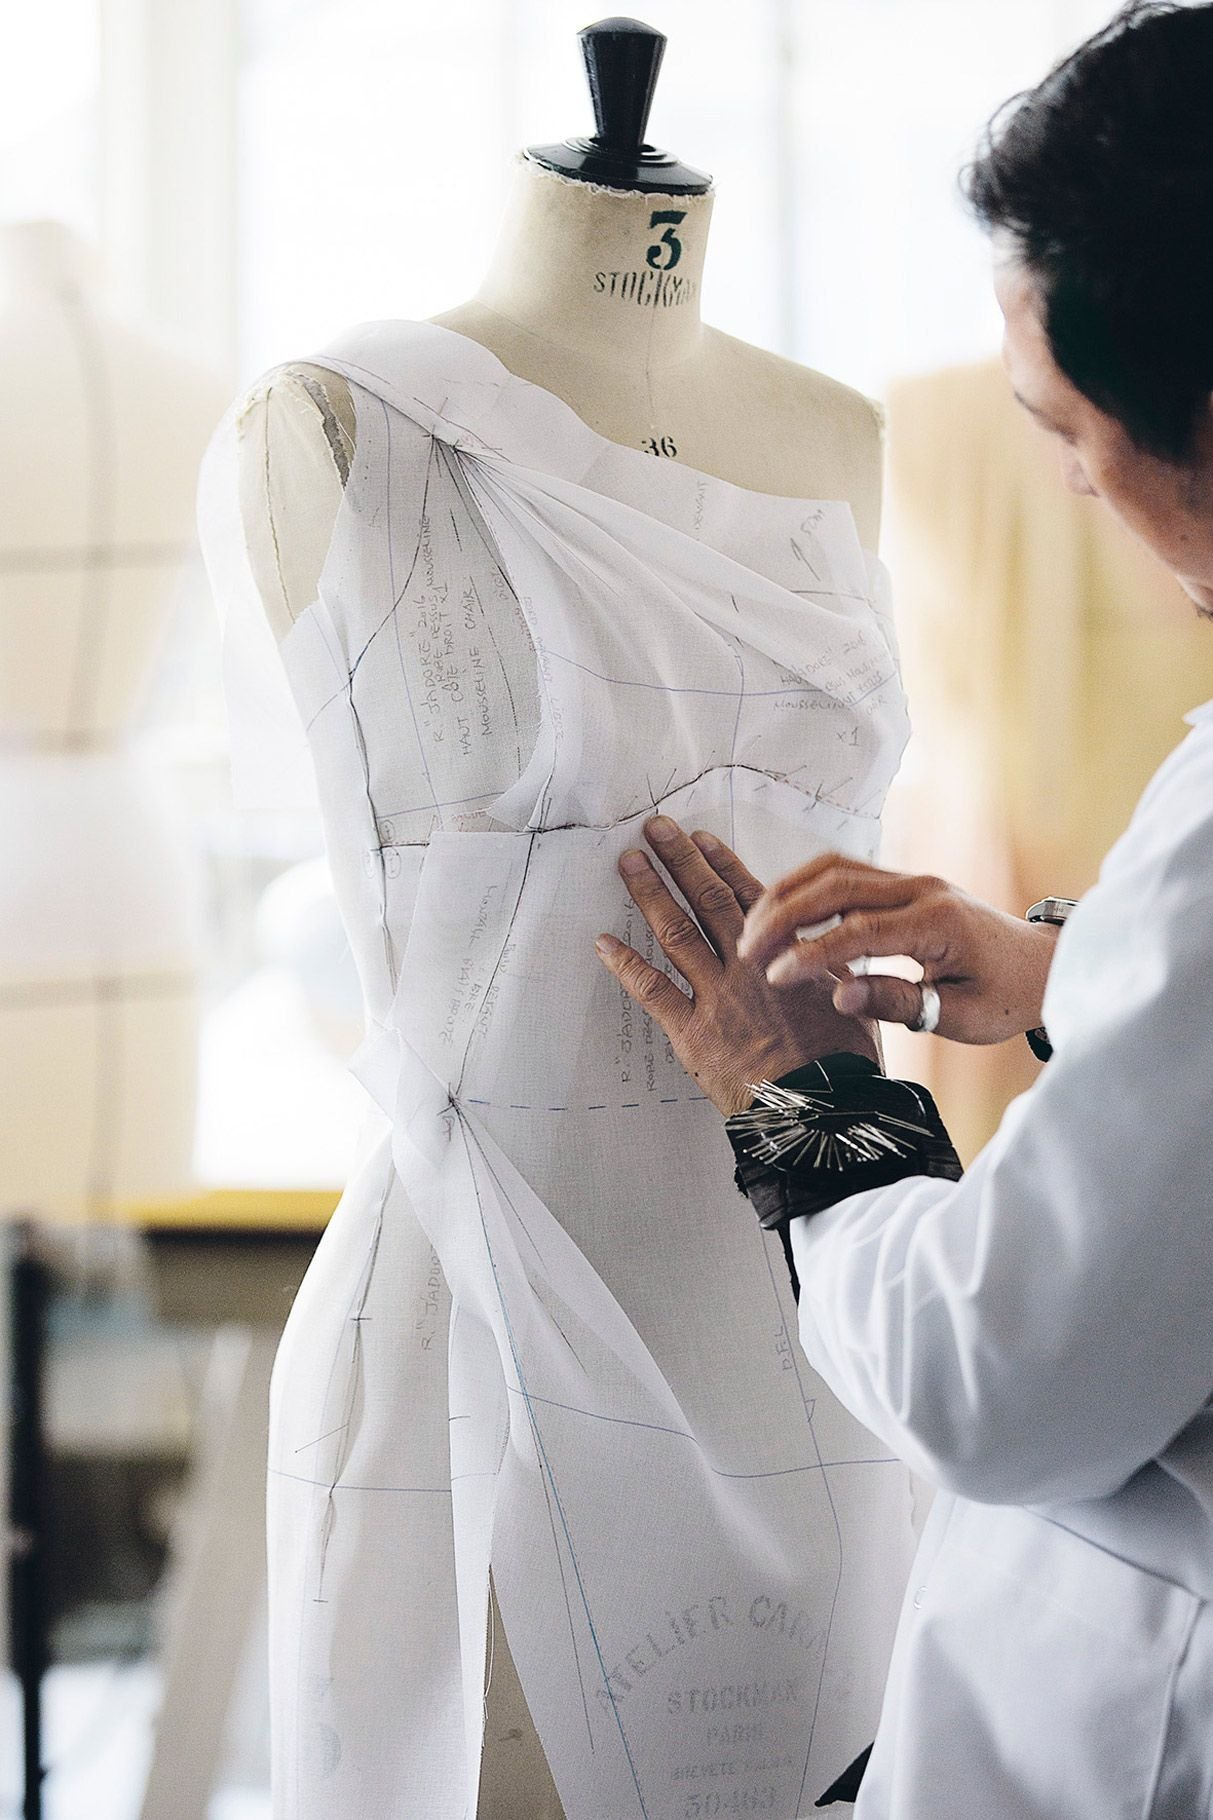 Платье на заказ пошив. Кристиан диор ателье. Муляжный метод конструирования одежды. Шитье одежды. Портной дизайнер одежды.